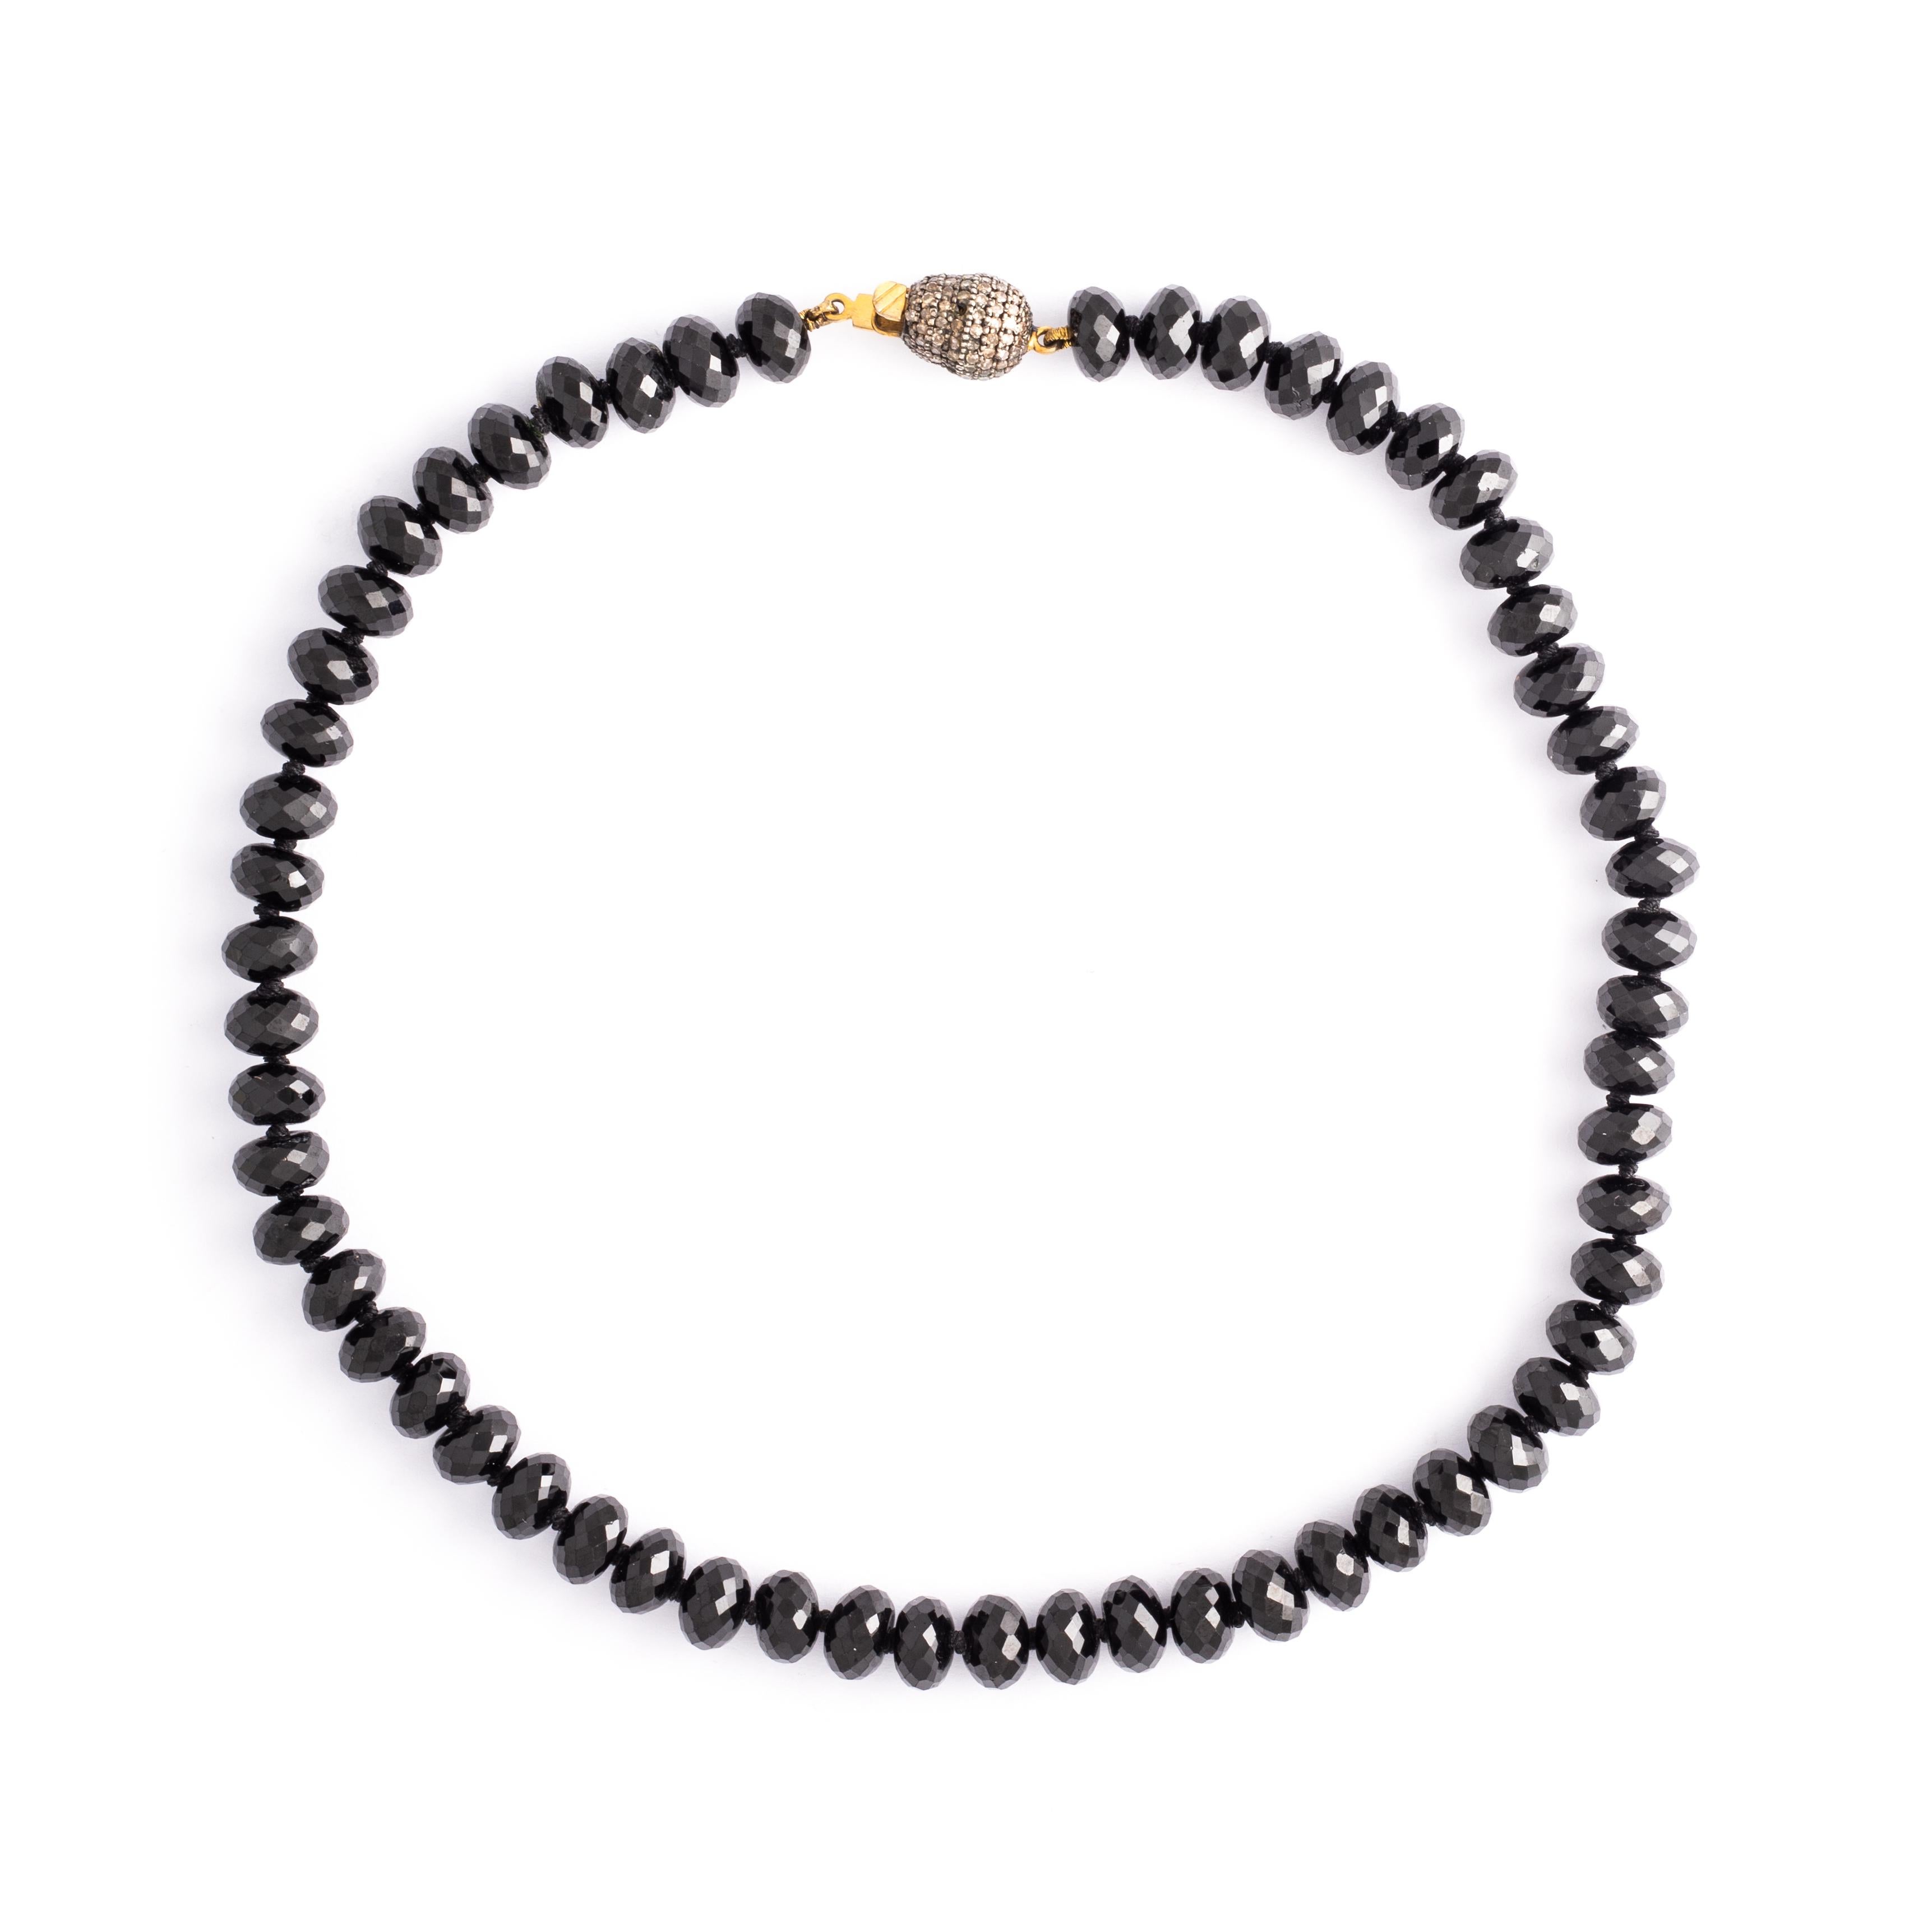 Collier de perles d'onyx à facettes multiples avec fermoir en diamant brun.

Longueur totale : environ 16,14 pouces (41,00 centimètres).
Poids total : 61,78 grammes.